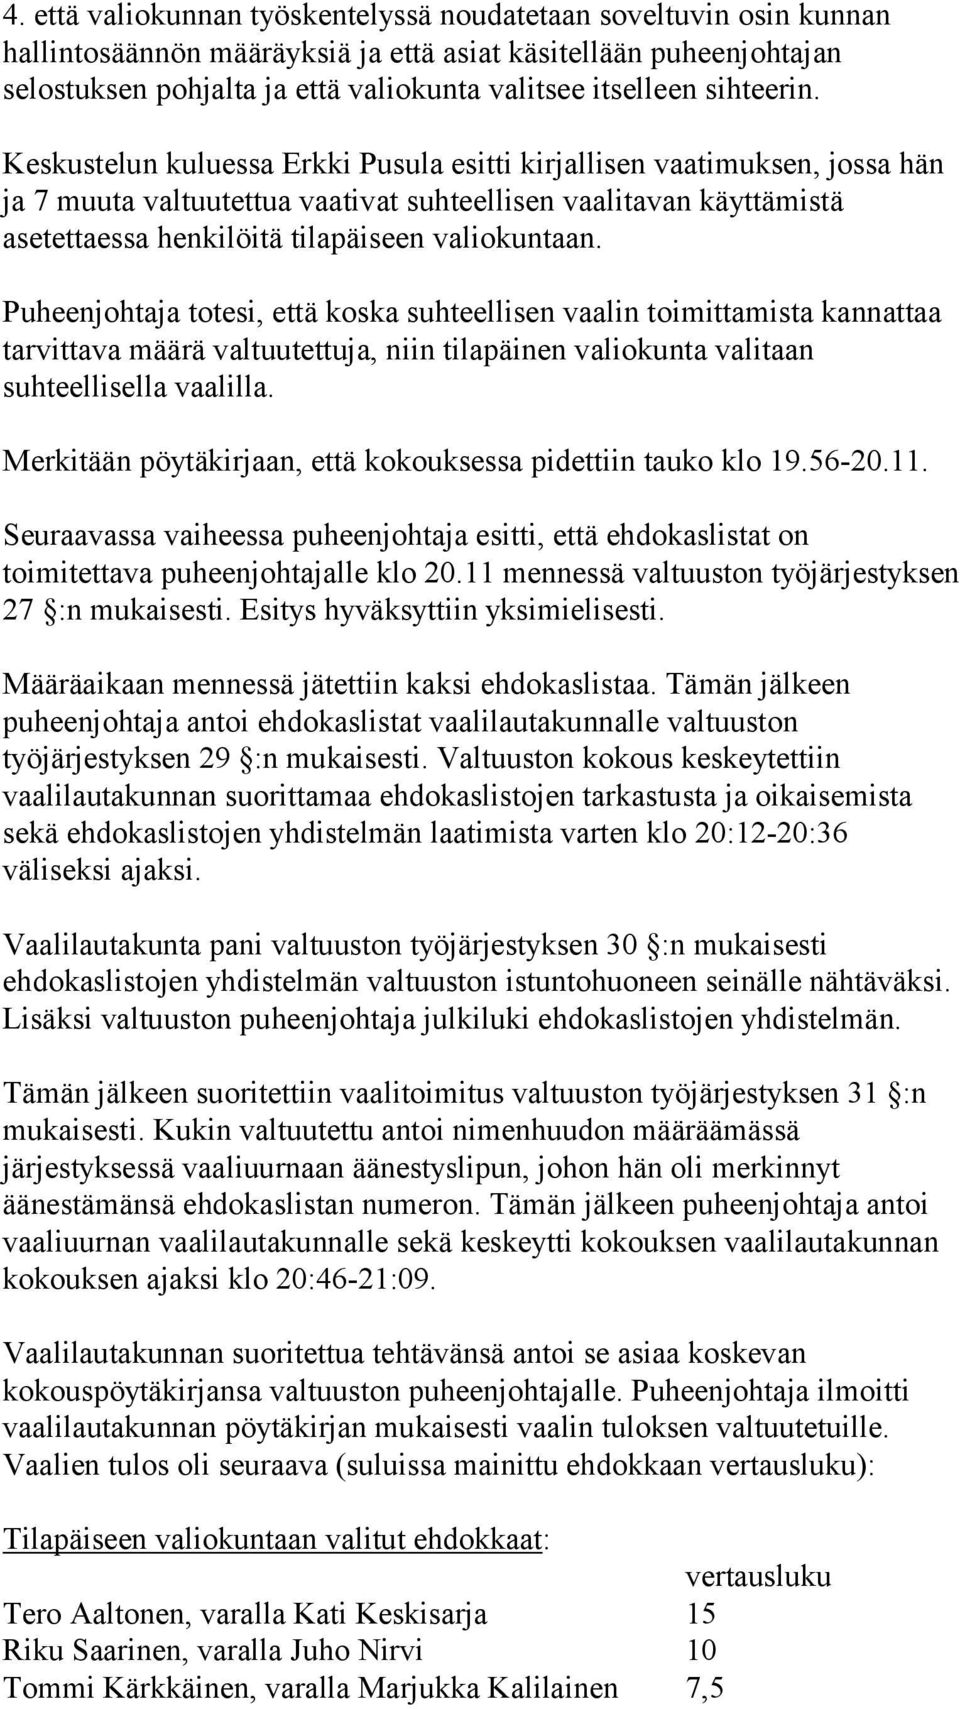 Keskustelun kuluessa Erkki Pusula esitti kirjallisen vaatimuksen, jossa hän ja 7 muuta valtuutettua vaativat suhteellisen vaalitavan käyttämistä asetettaessa henkilöitä tilapäiseen valiokuntaan.